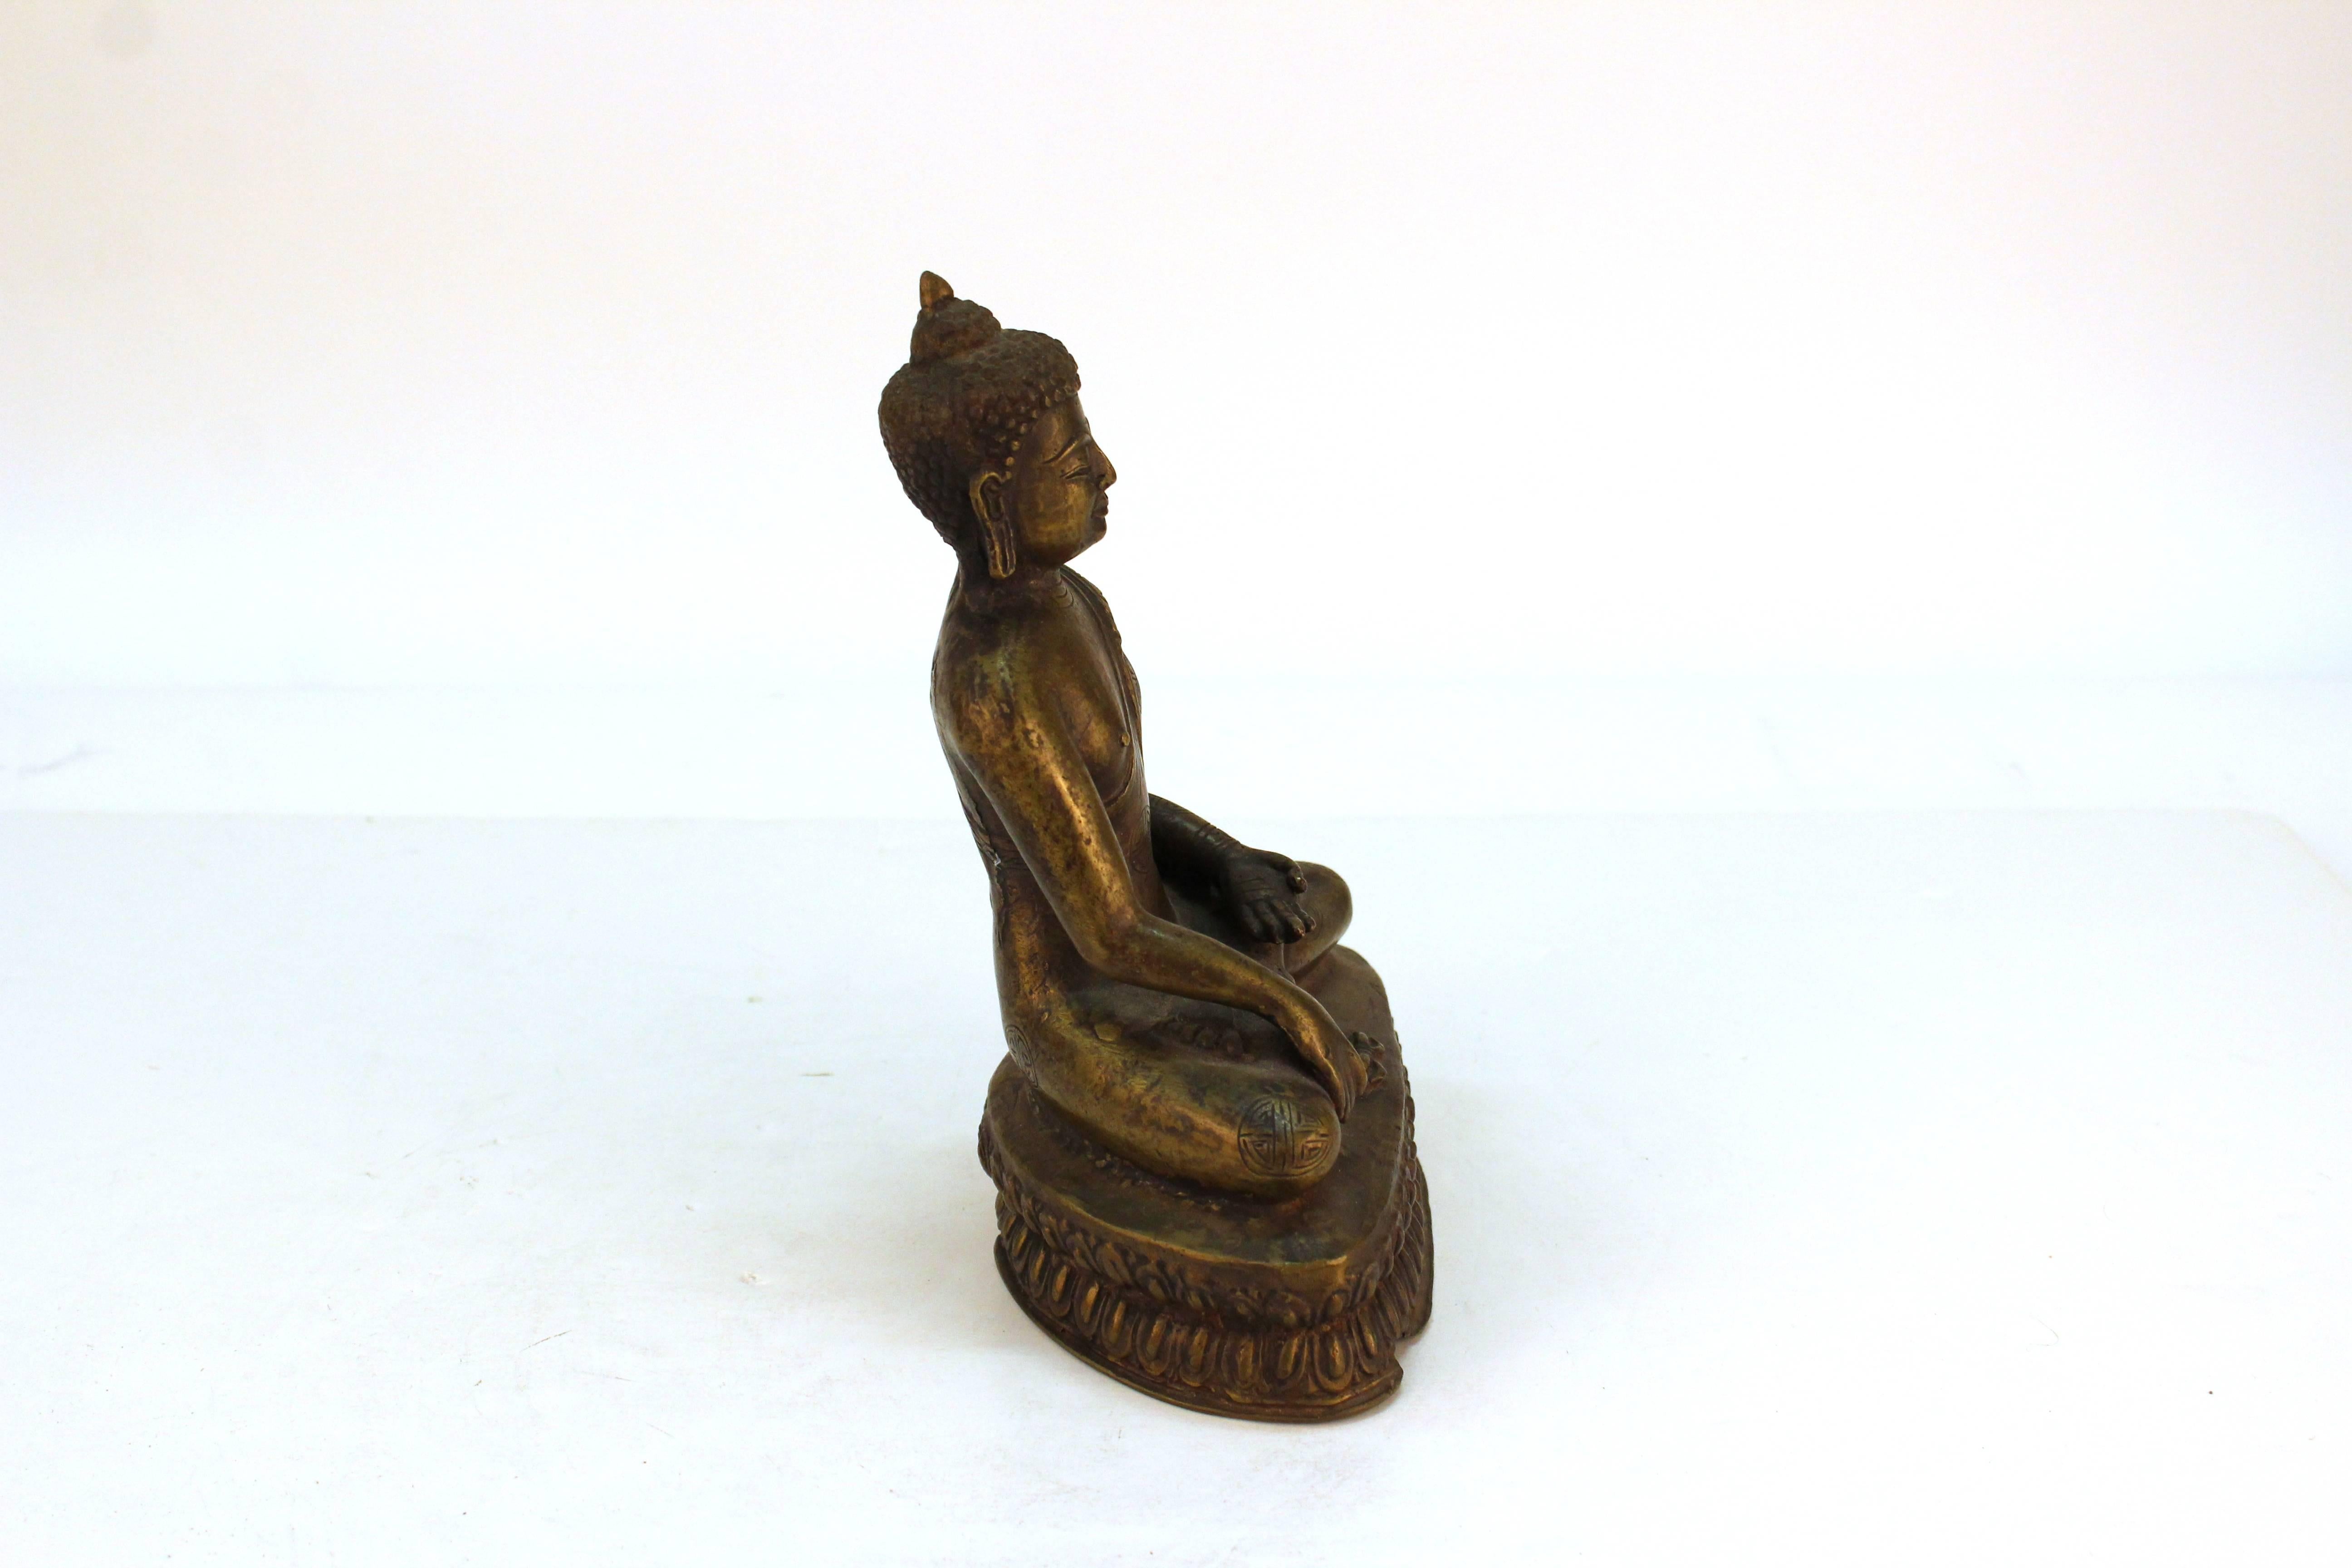 20th Century Chinese Seated Bronze Buddha Figure